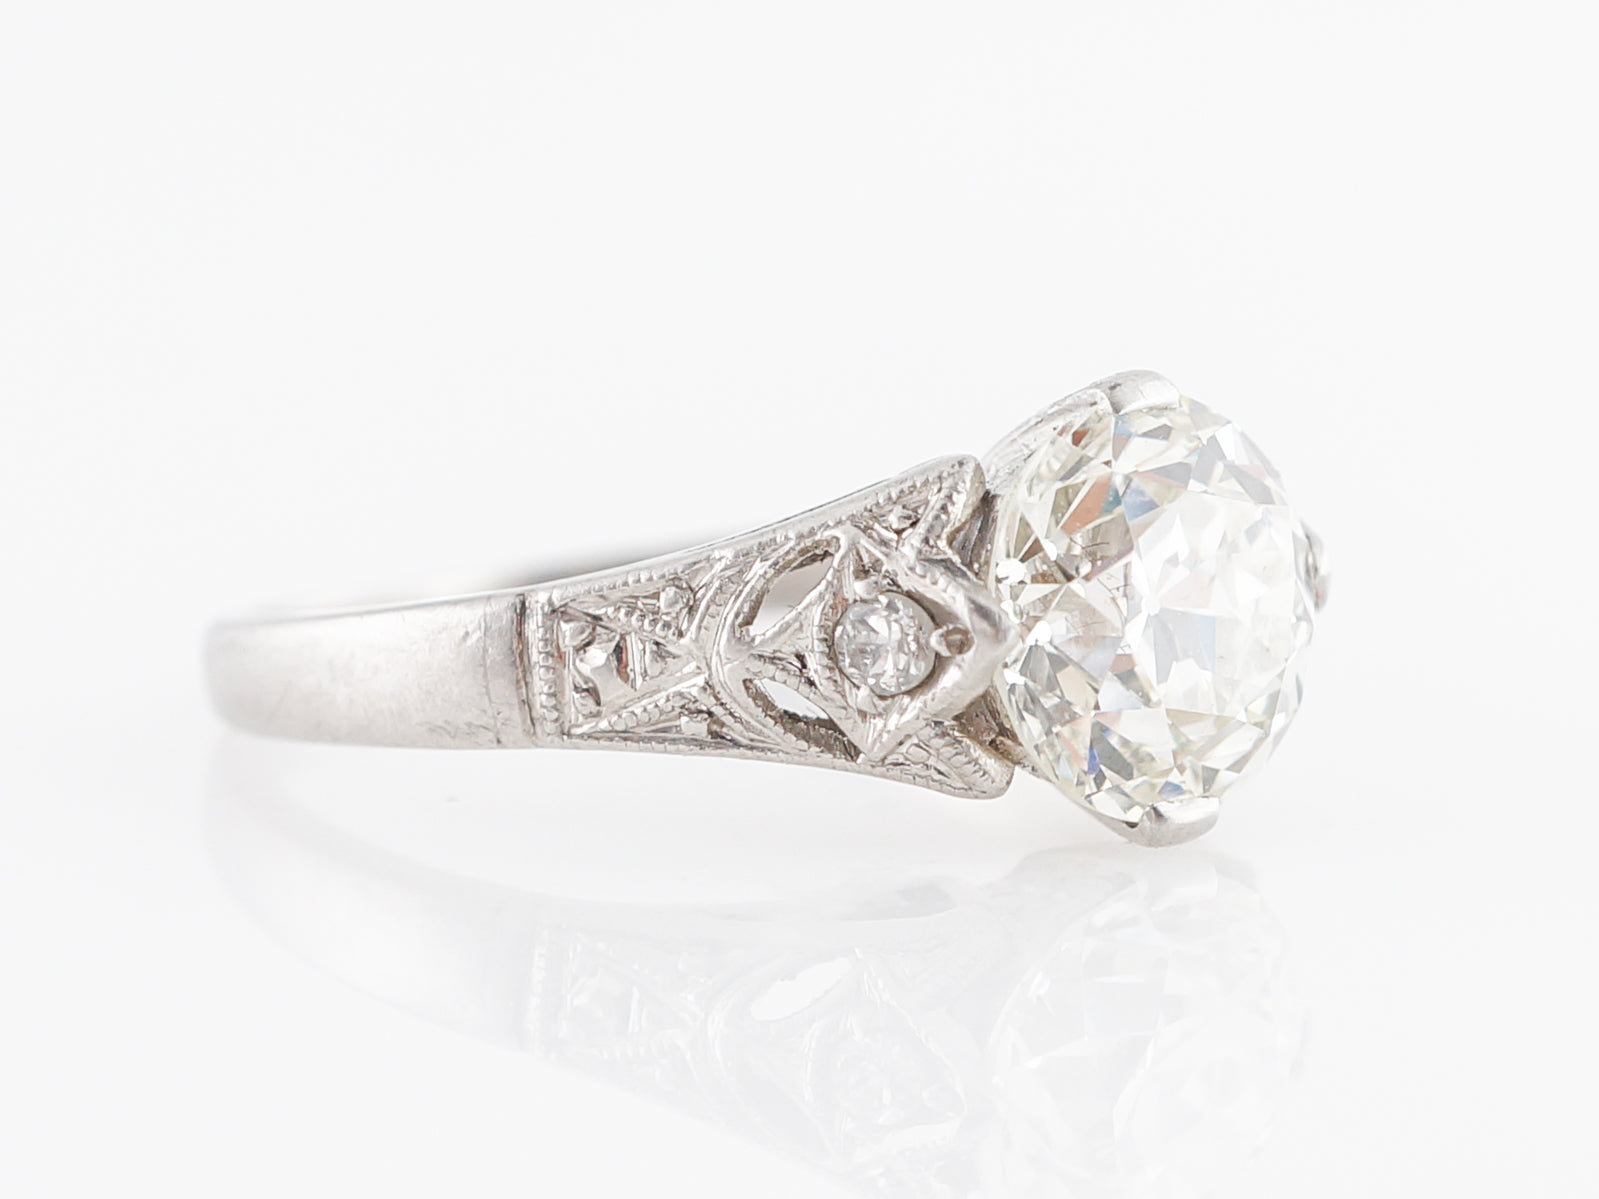 Exquisite Art Deco Diamond Engagement Ring in Platinum